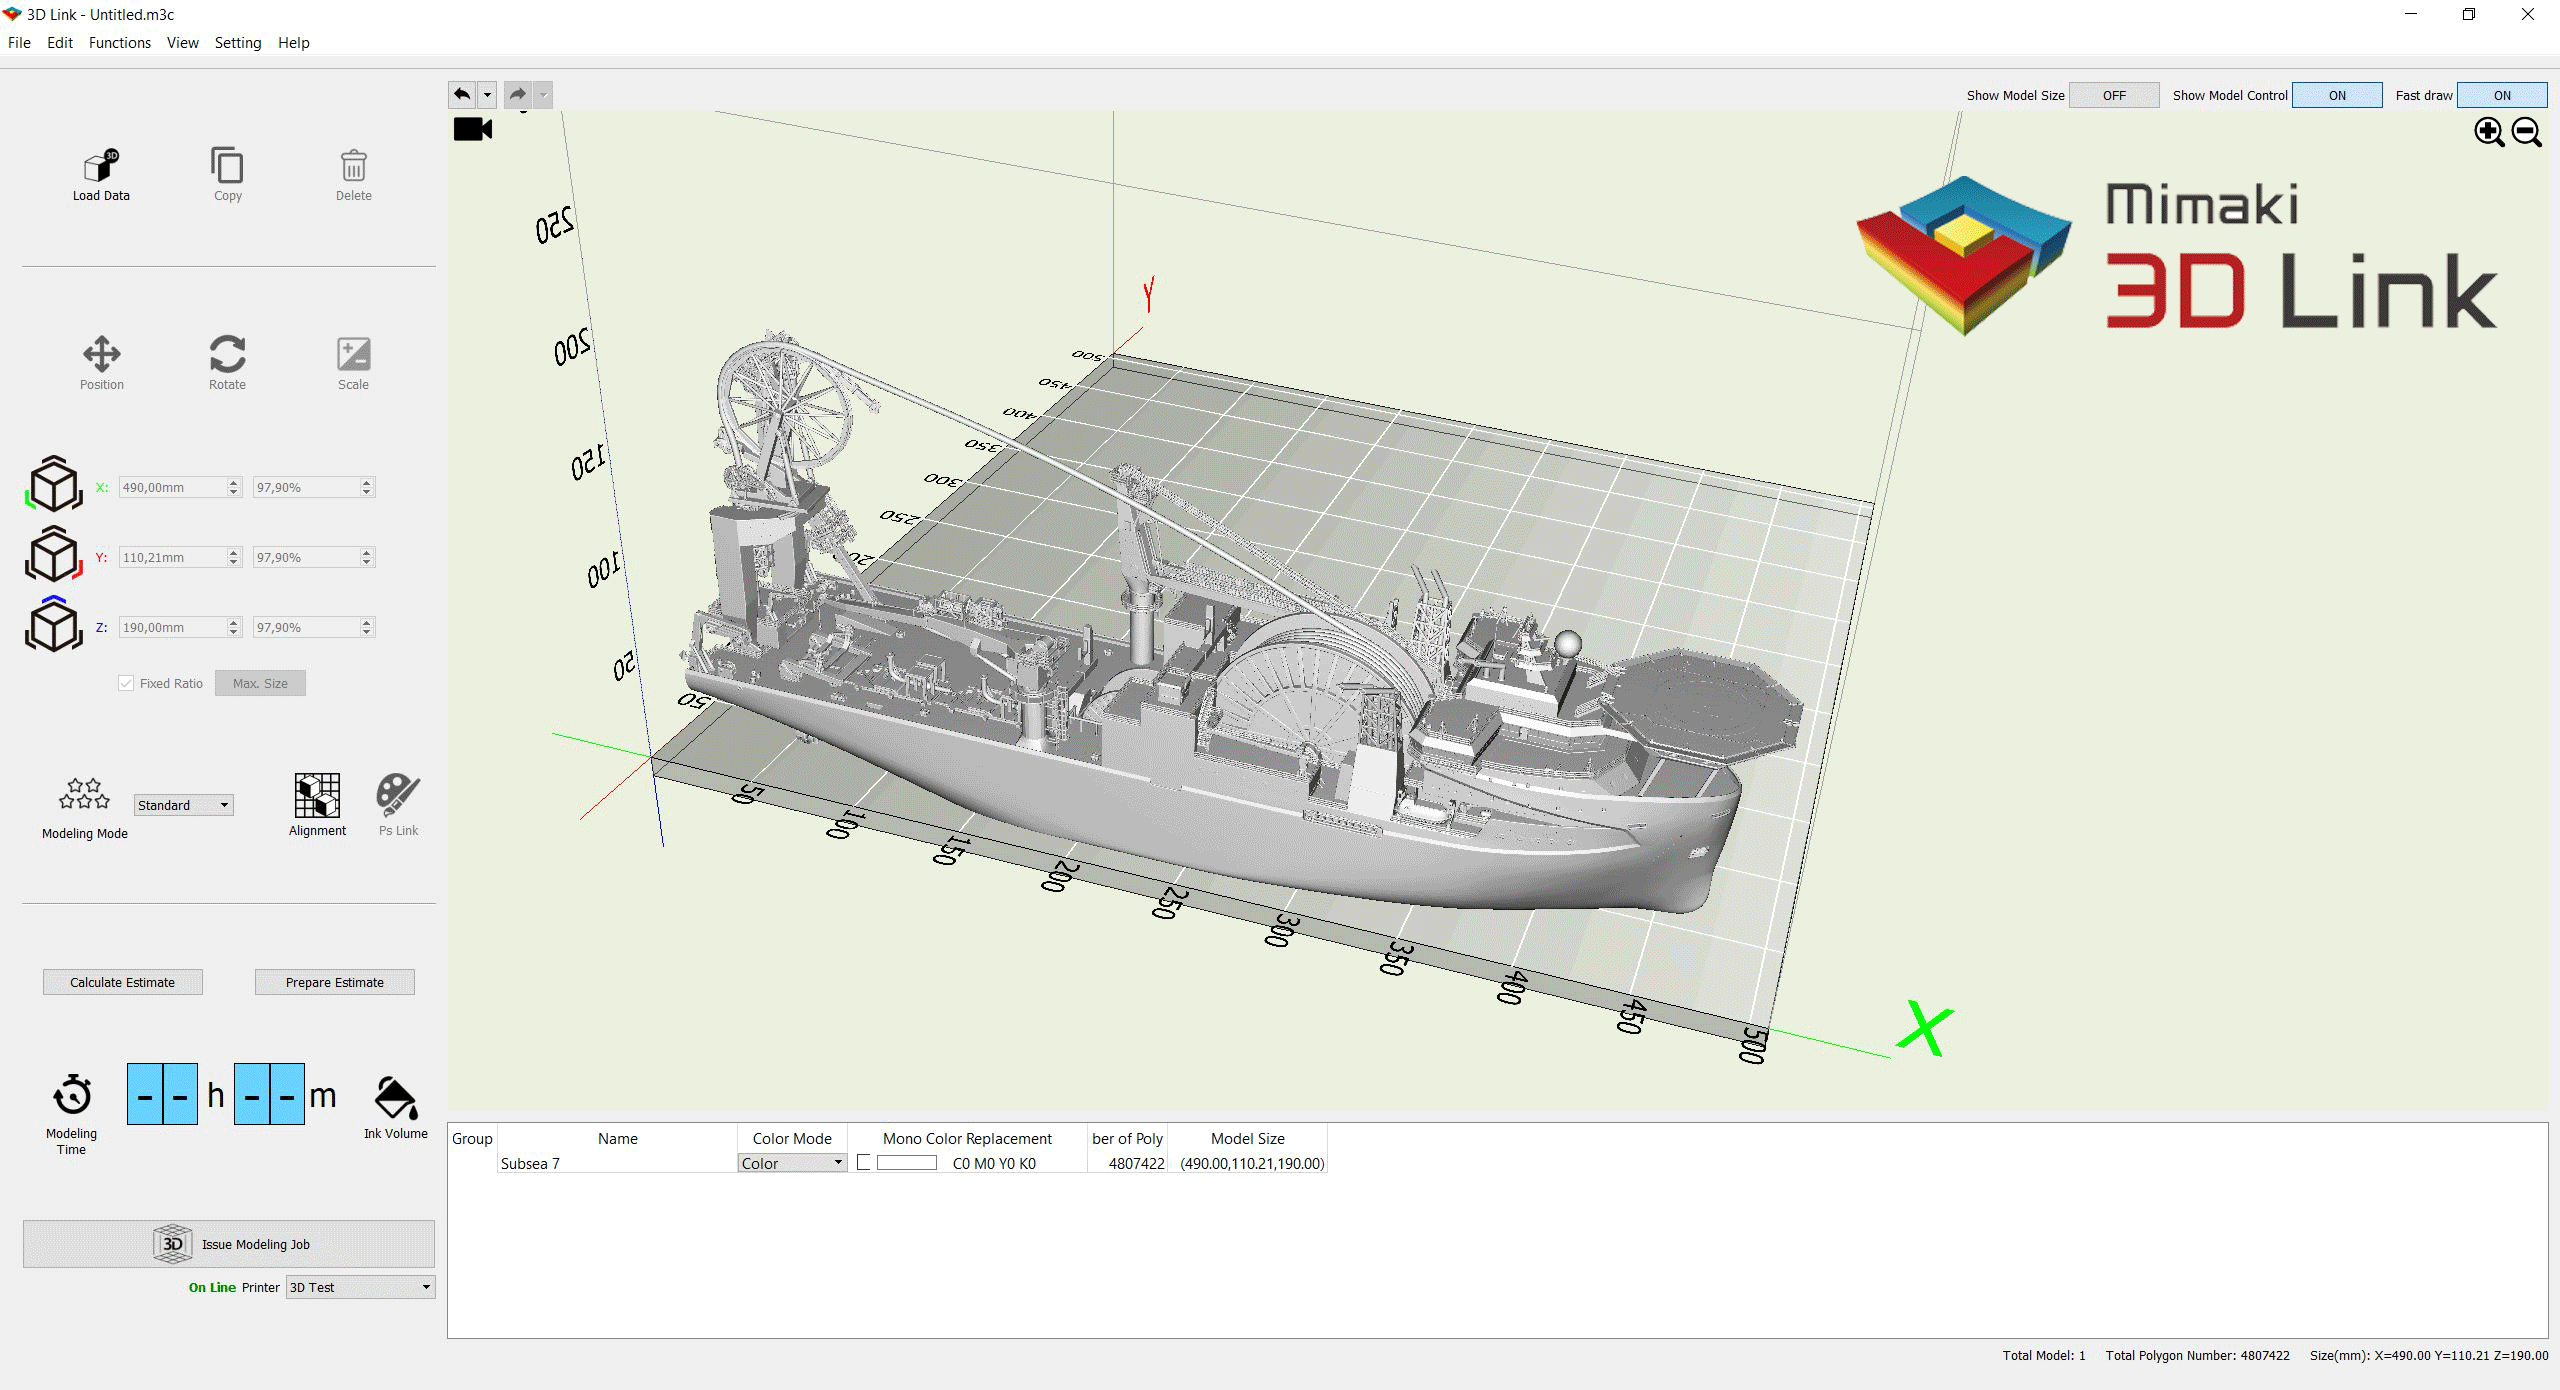 Mimaki-3D-Link-Software-ShipWjuEFaP7Qy3Jw